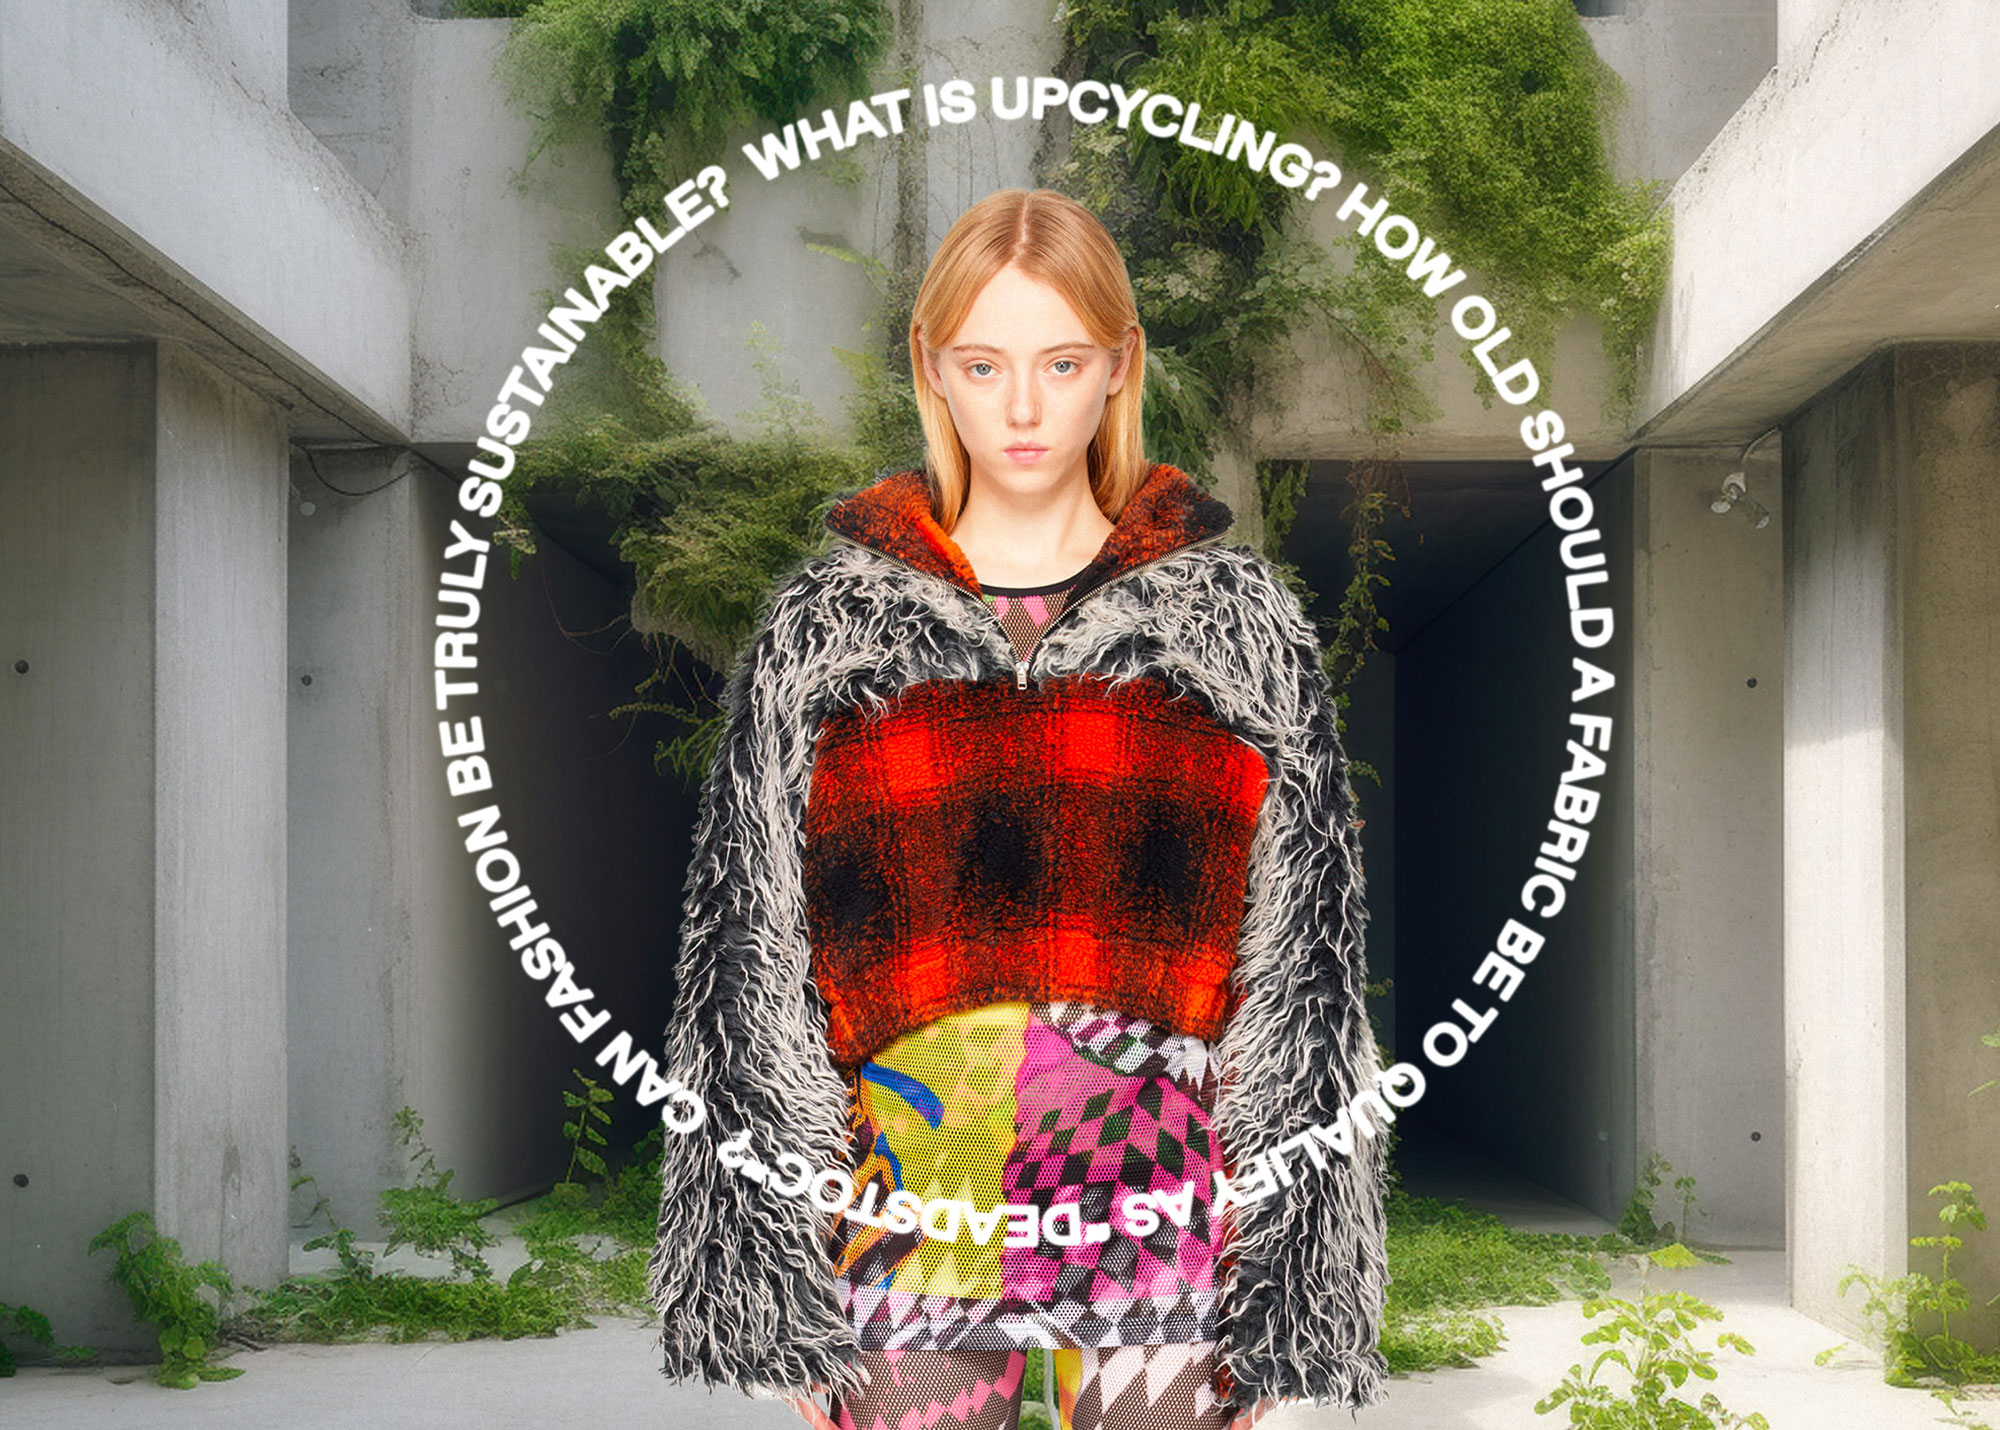 アップサイクルが切り拓くファッション最前線 | SSENSE 日本